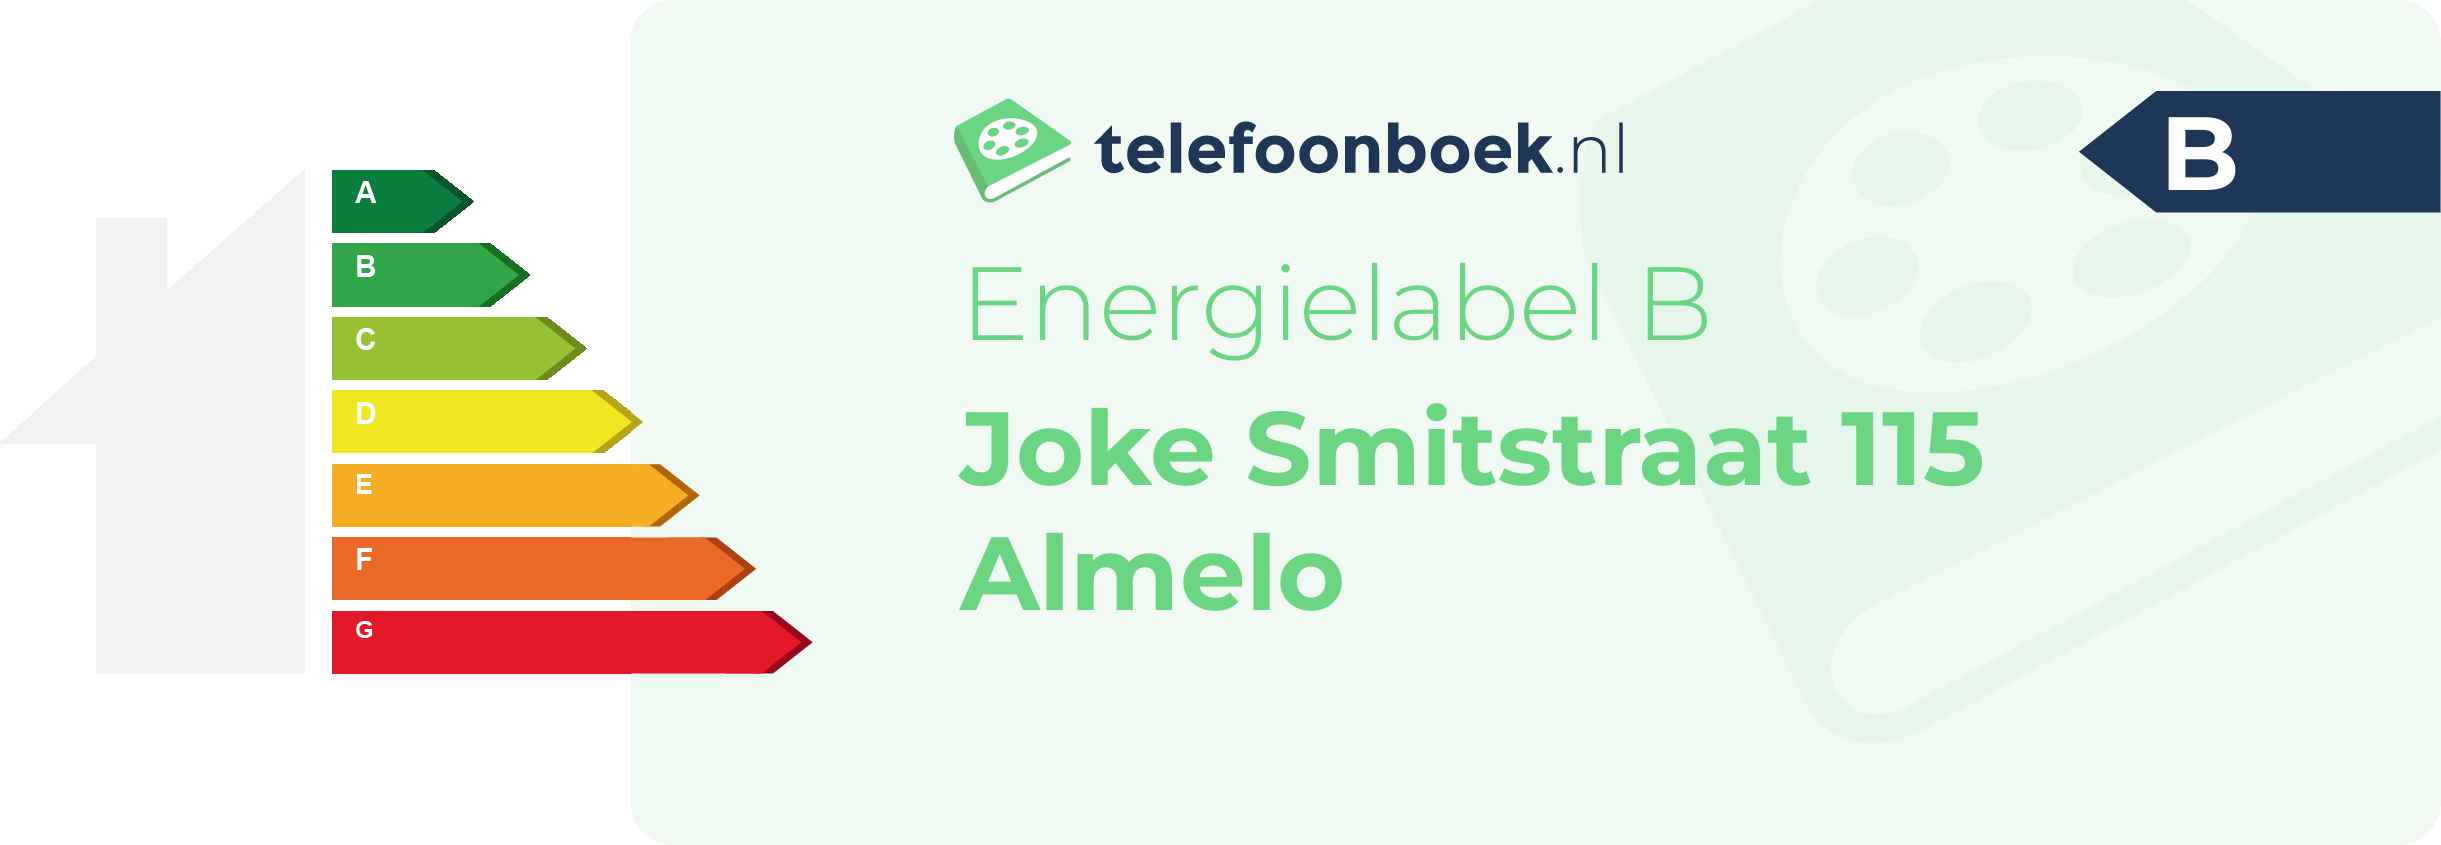 Energielabel Joke Smitstraat 115 Almelo